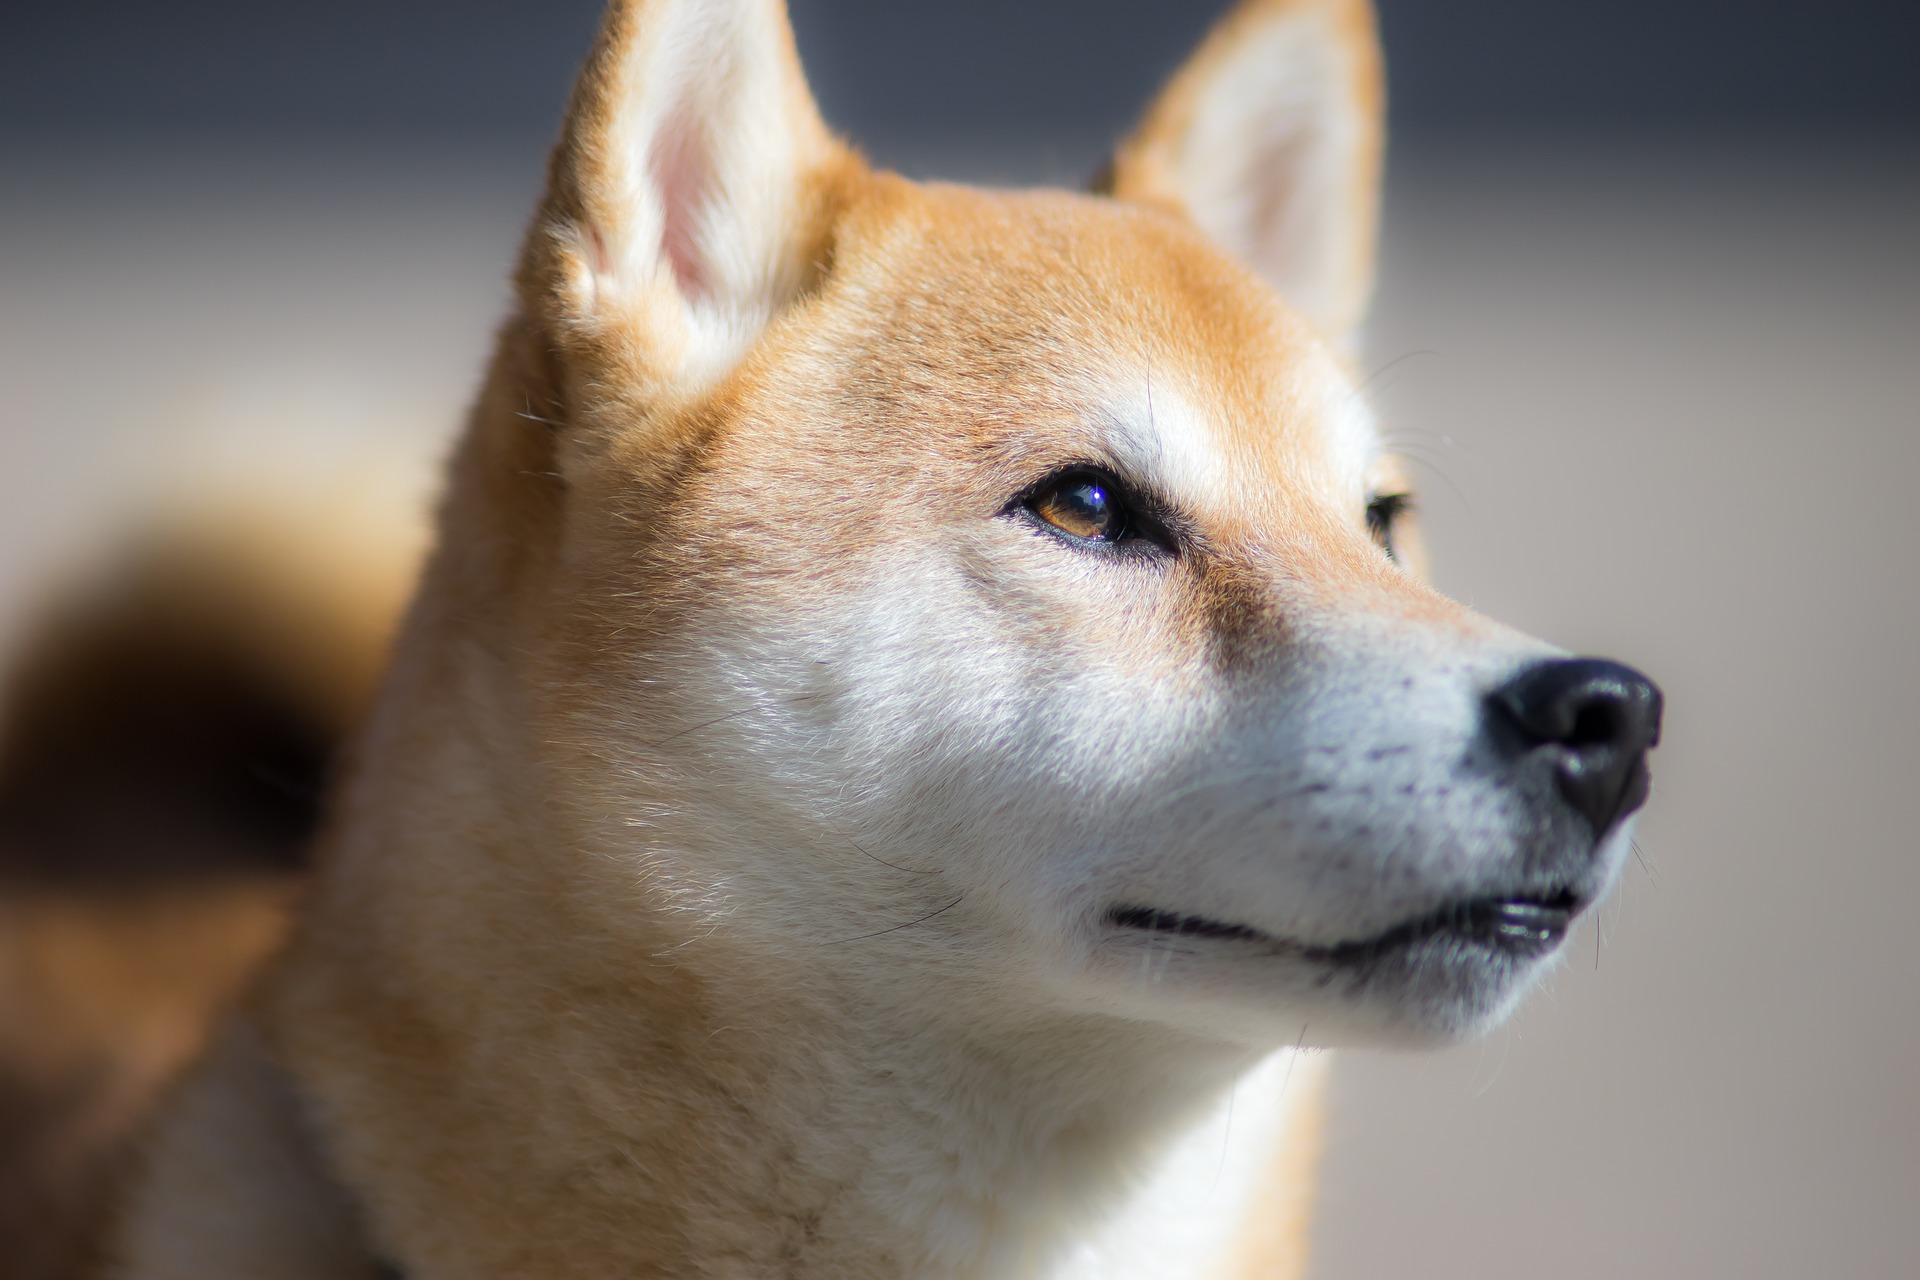 Il cane shiba inu non ha una grande predisposizione alle malattie e generalmente gode di buona salute e forma fisica fino alla vecchiaia.